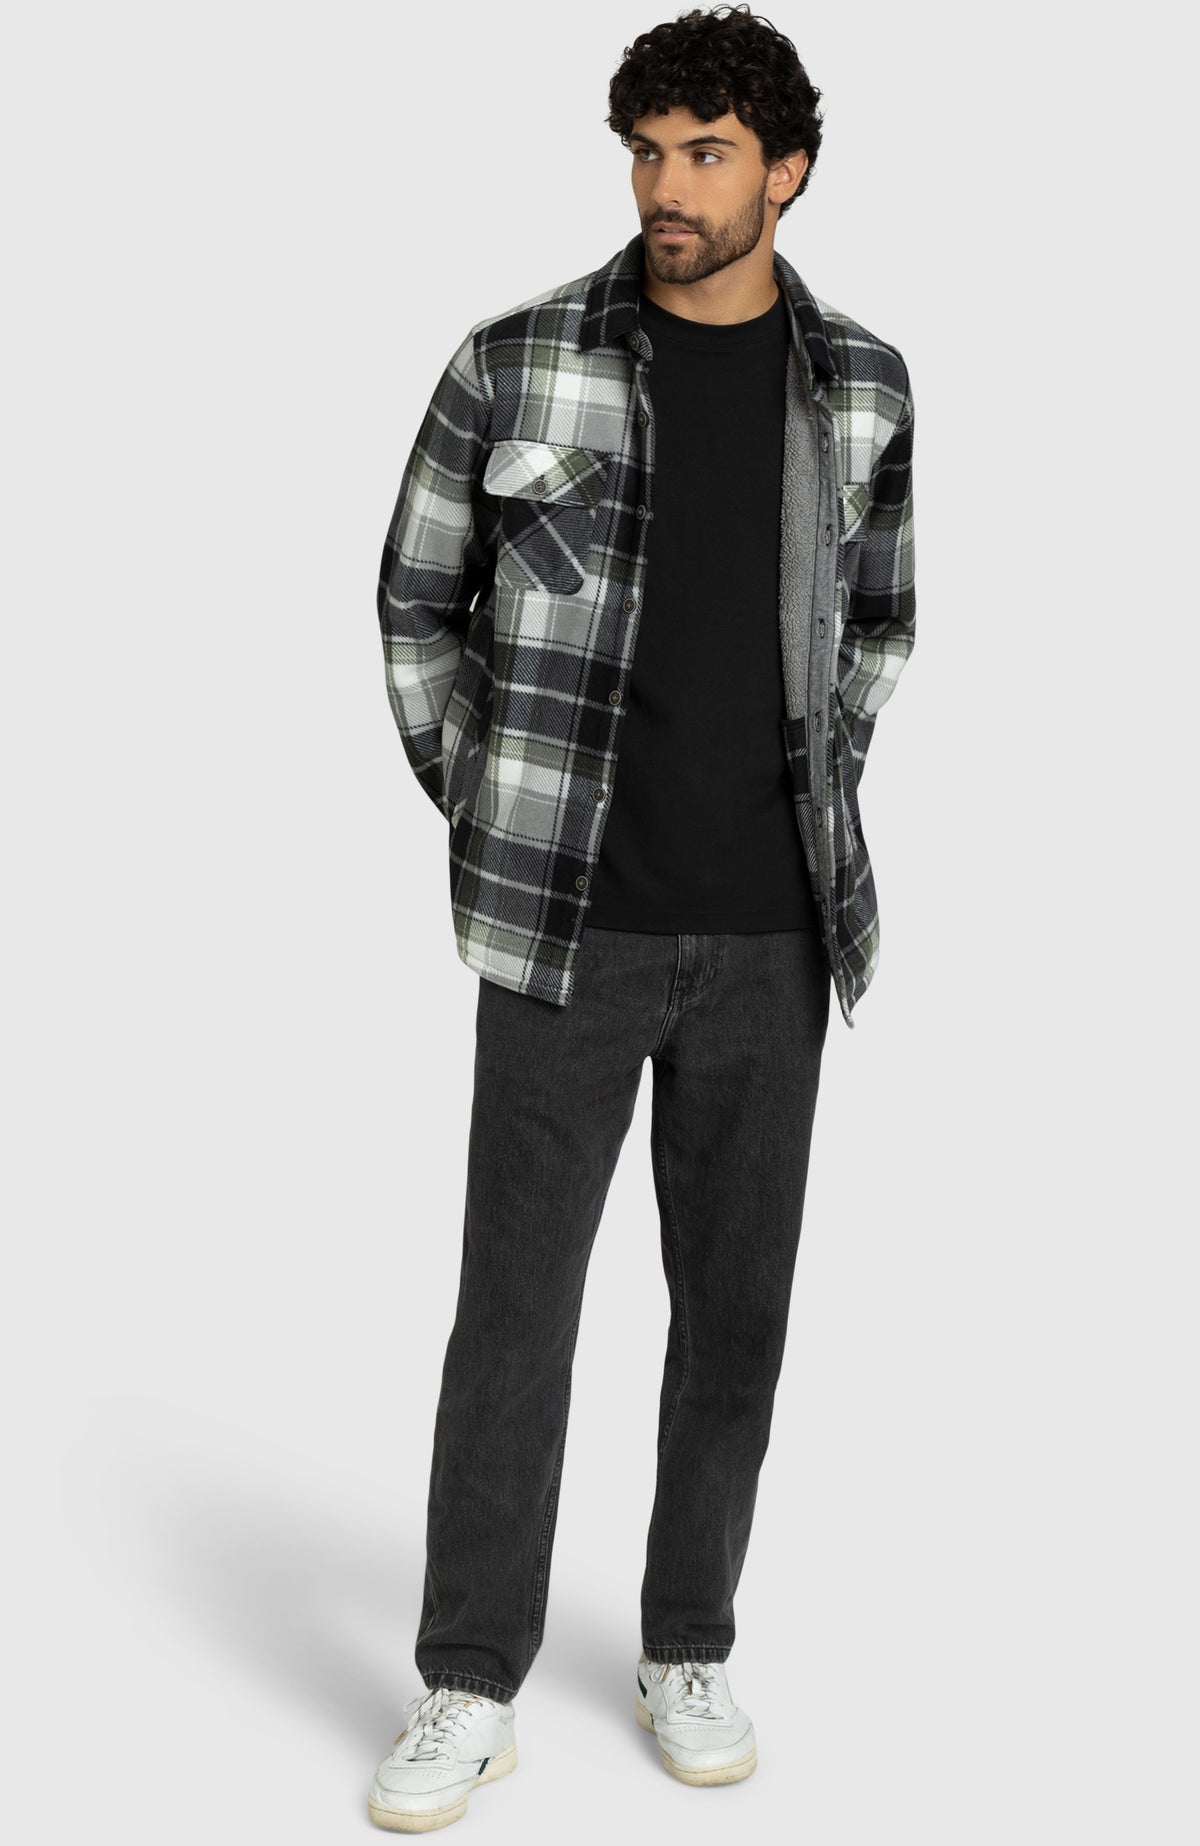 Black Beetle Polar Fleece Shirt Jacket for Men - Full Length